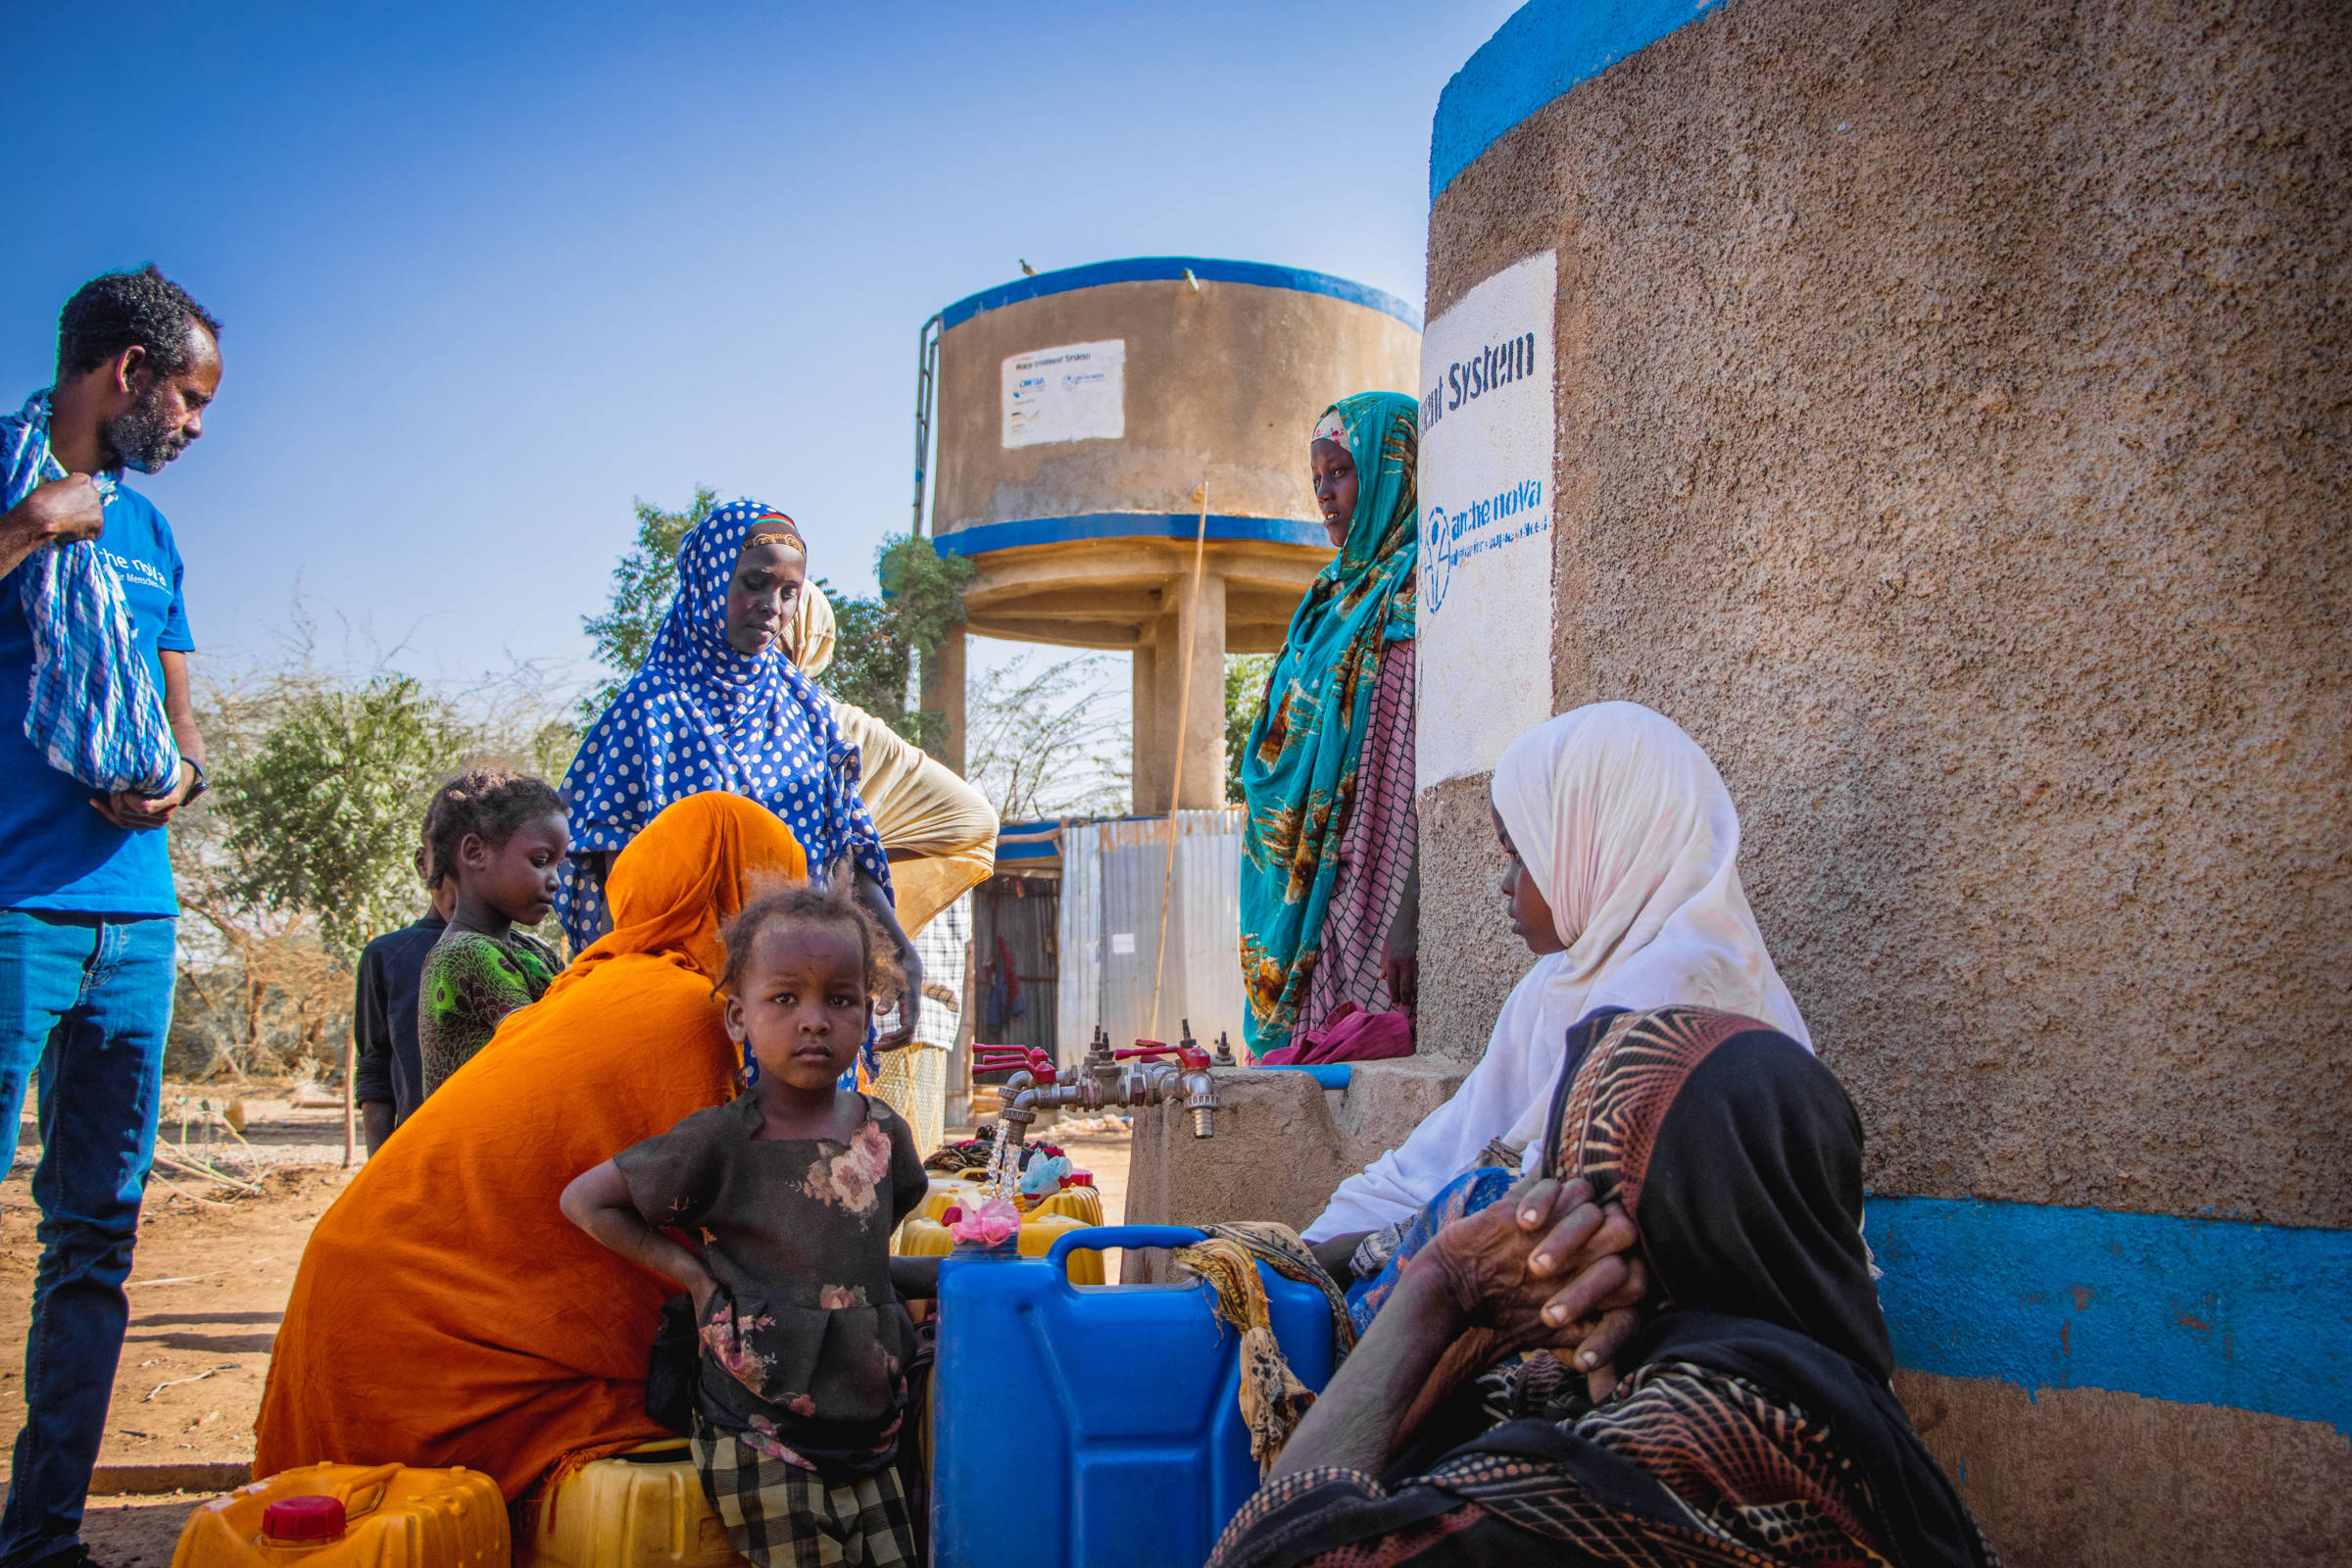 Menschgruppe an an Wasserausgabestation, Kind blickt in die Kamera